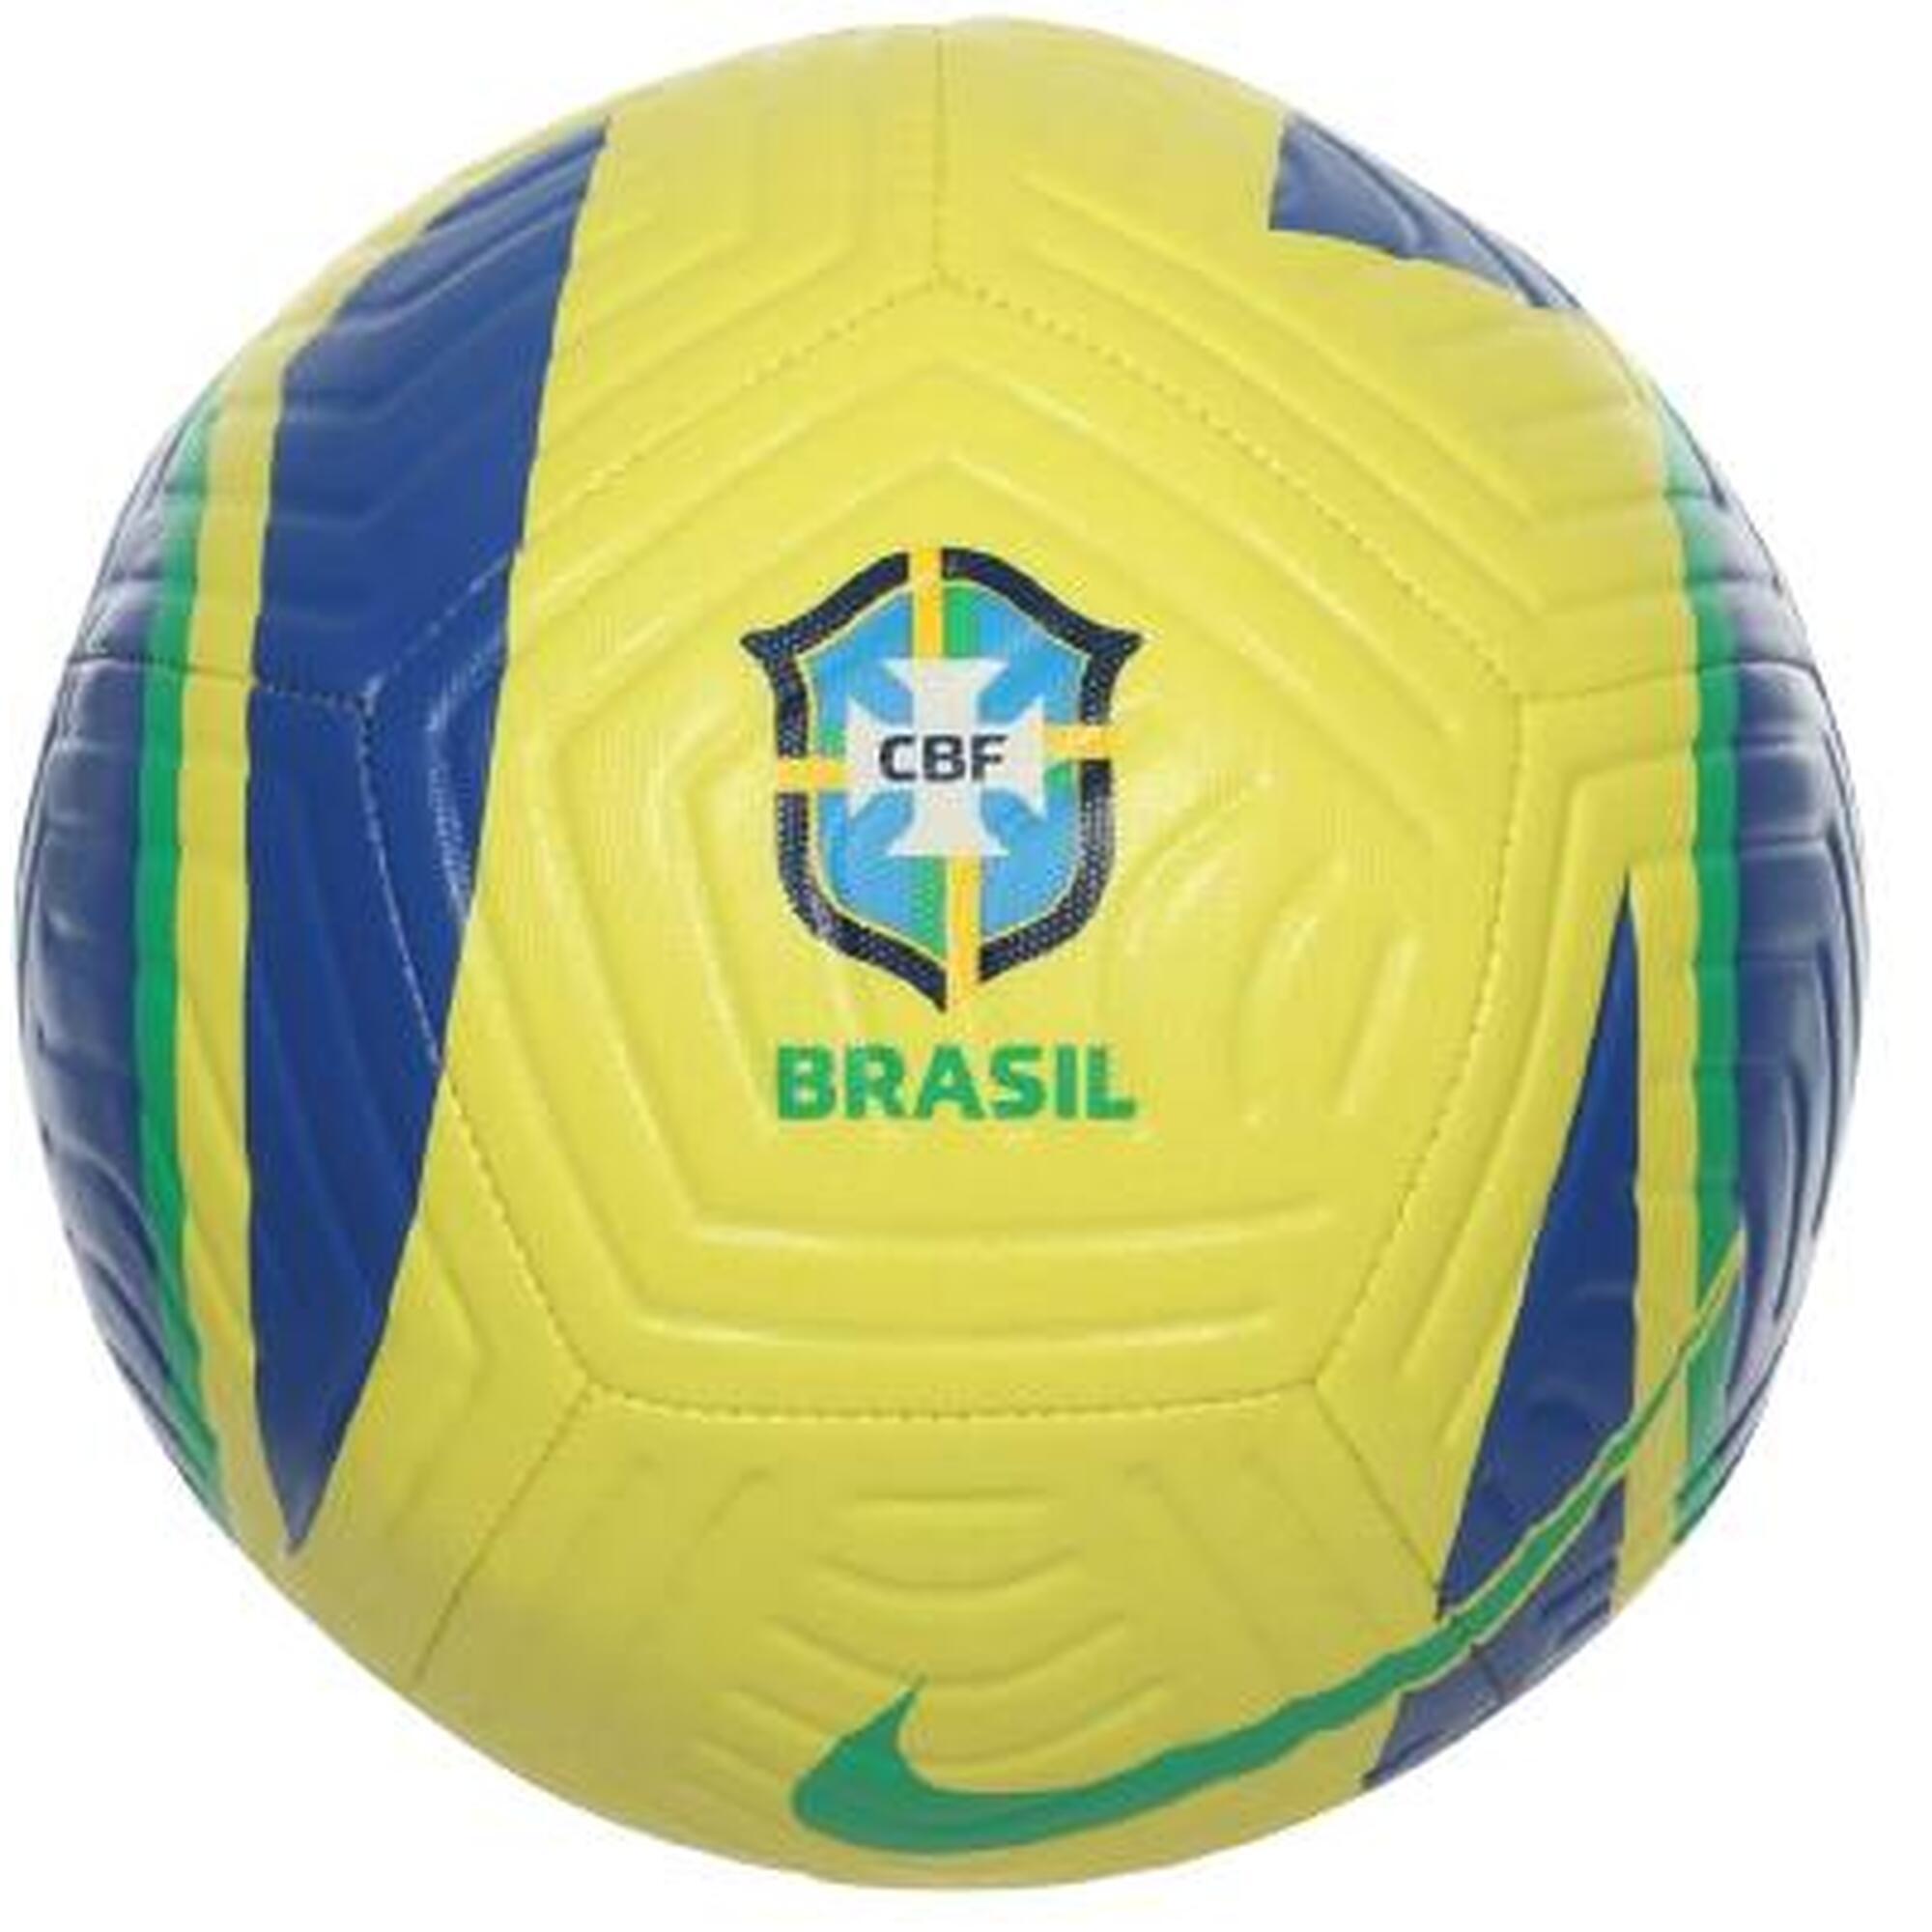 Piłka do piłki nożnej Nike CBF Brazil Academy treningowa